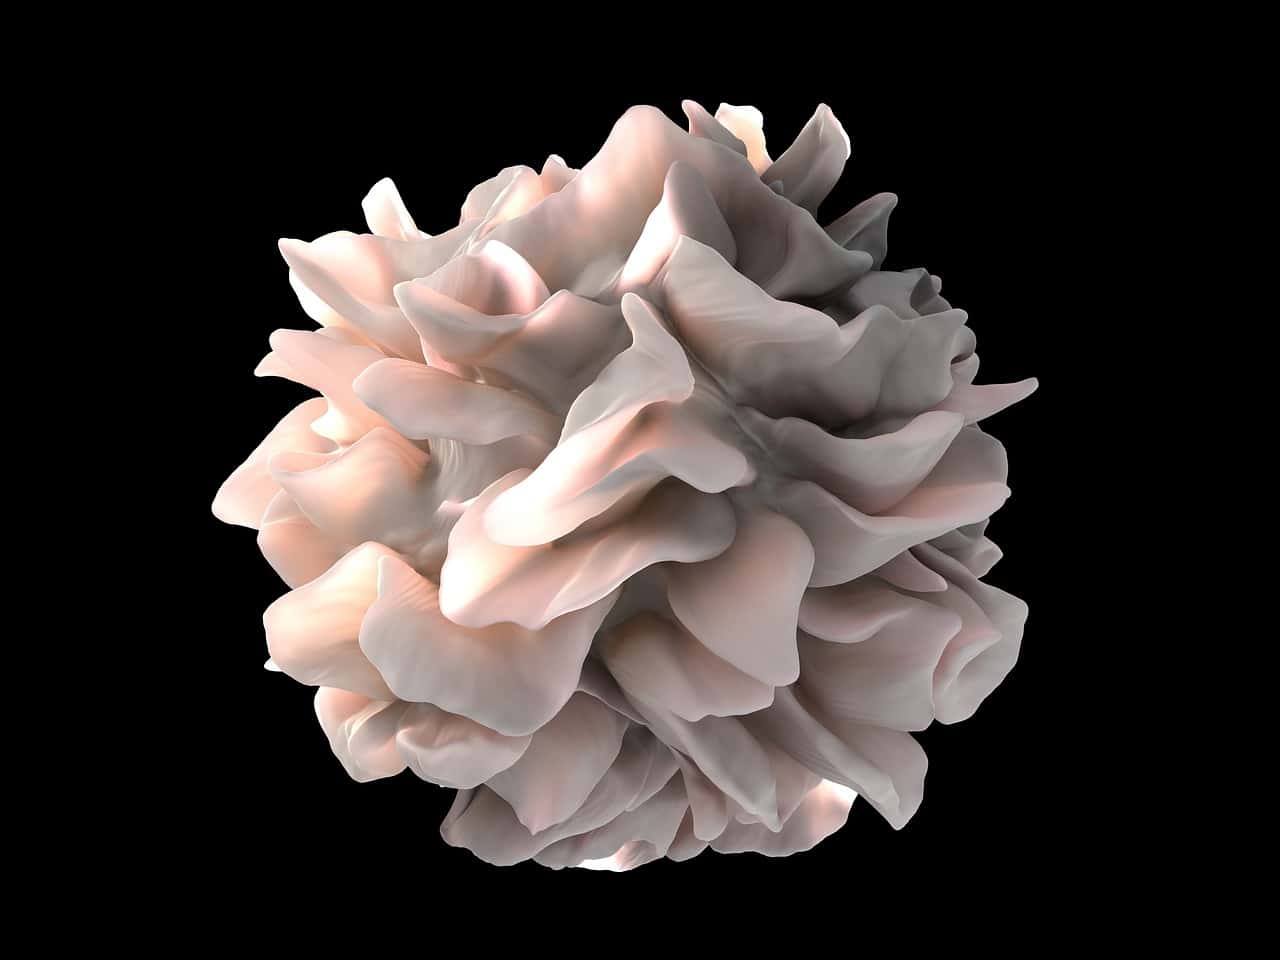 Microfotografía de una célula dendrítica